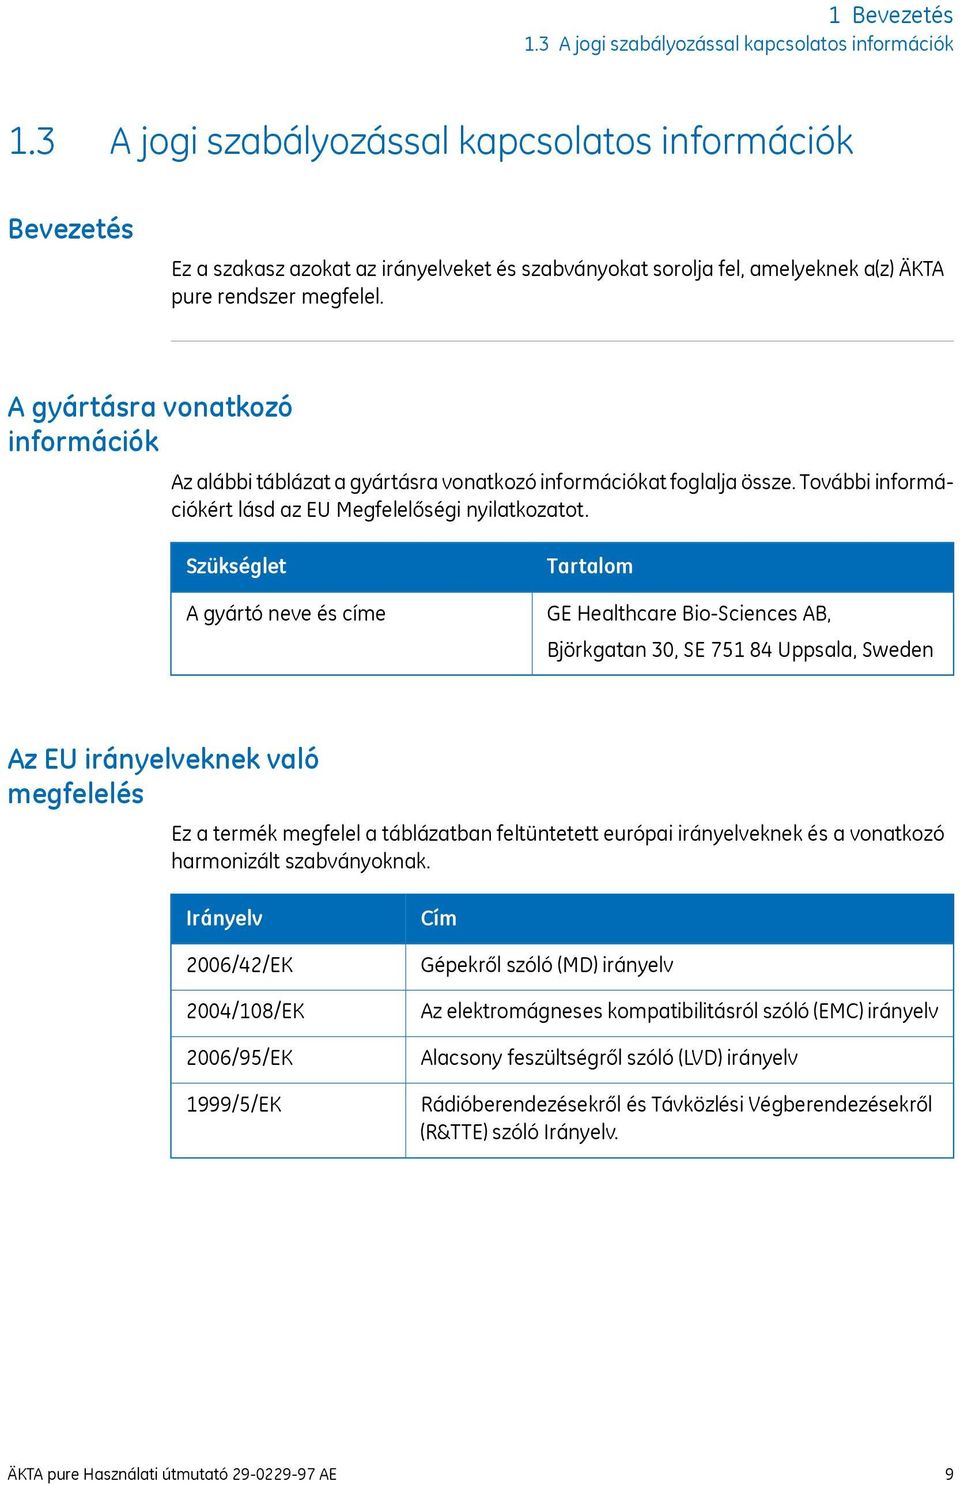 A gyártásra vonatkozó információk Az alábbi táblázat a gyártásra vonatkozó információkat foglalja össze. További információkért lásd az EU Megfelelőségi nyilatkozatot.